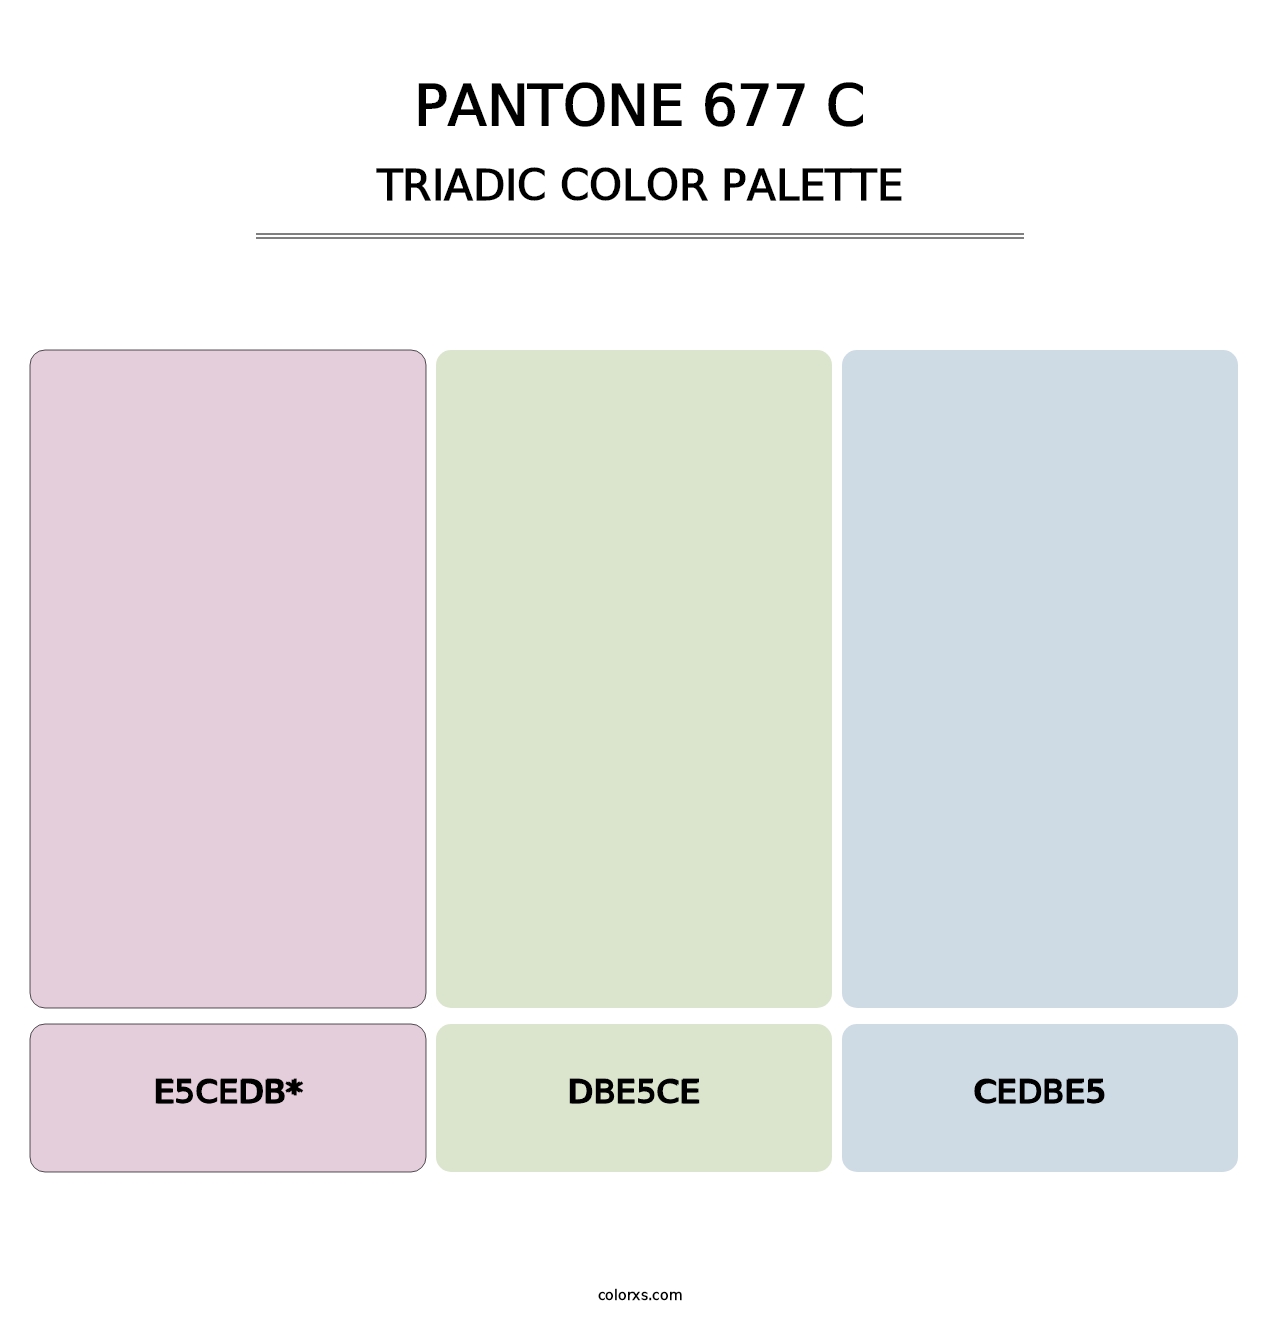 PANTONE 677 C - Triadic Color Palette